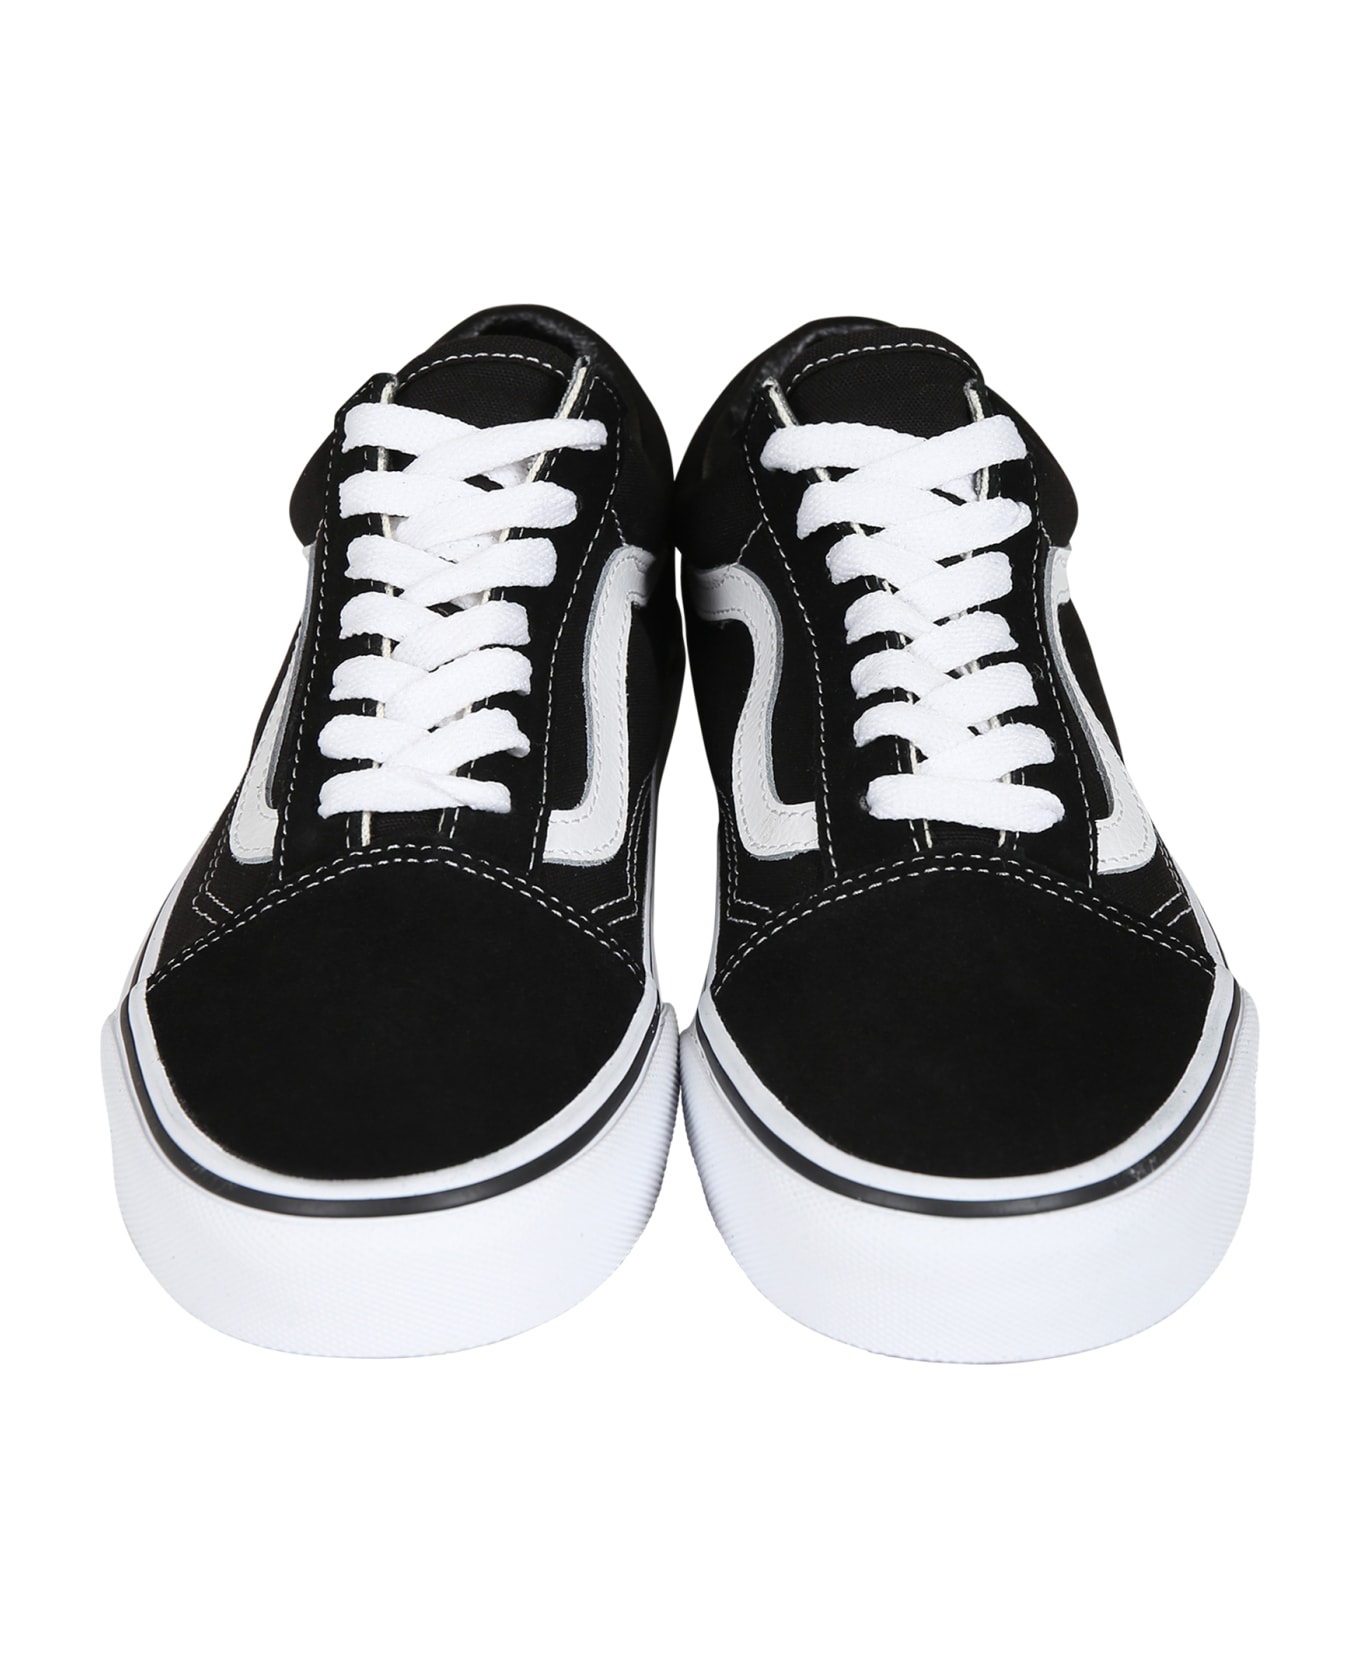 Vans Black Old School Sneakers For Kids - Black シューズ